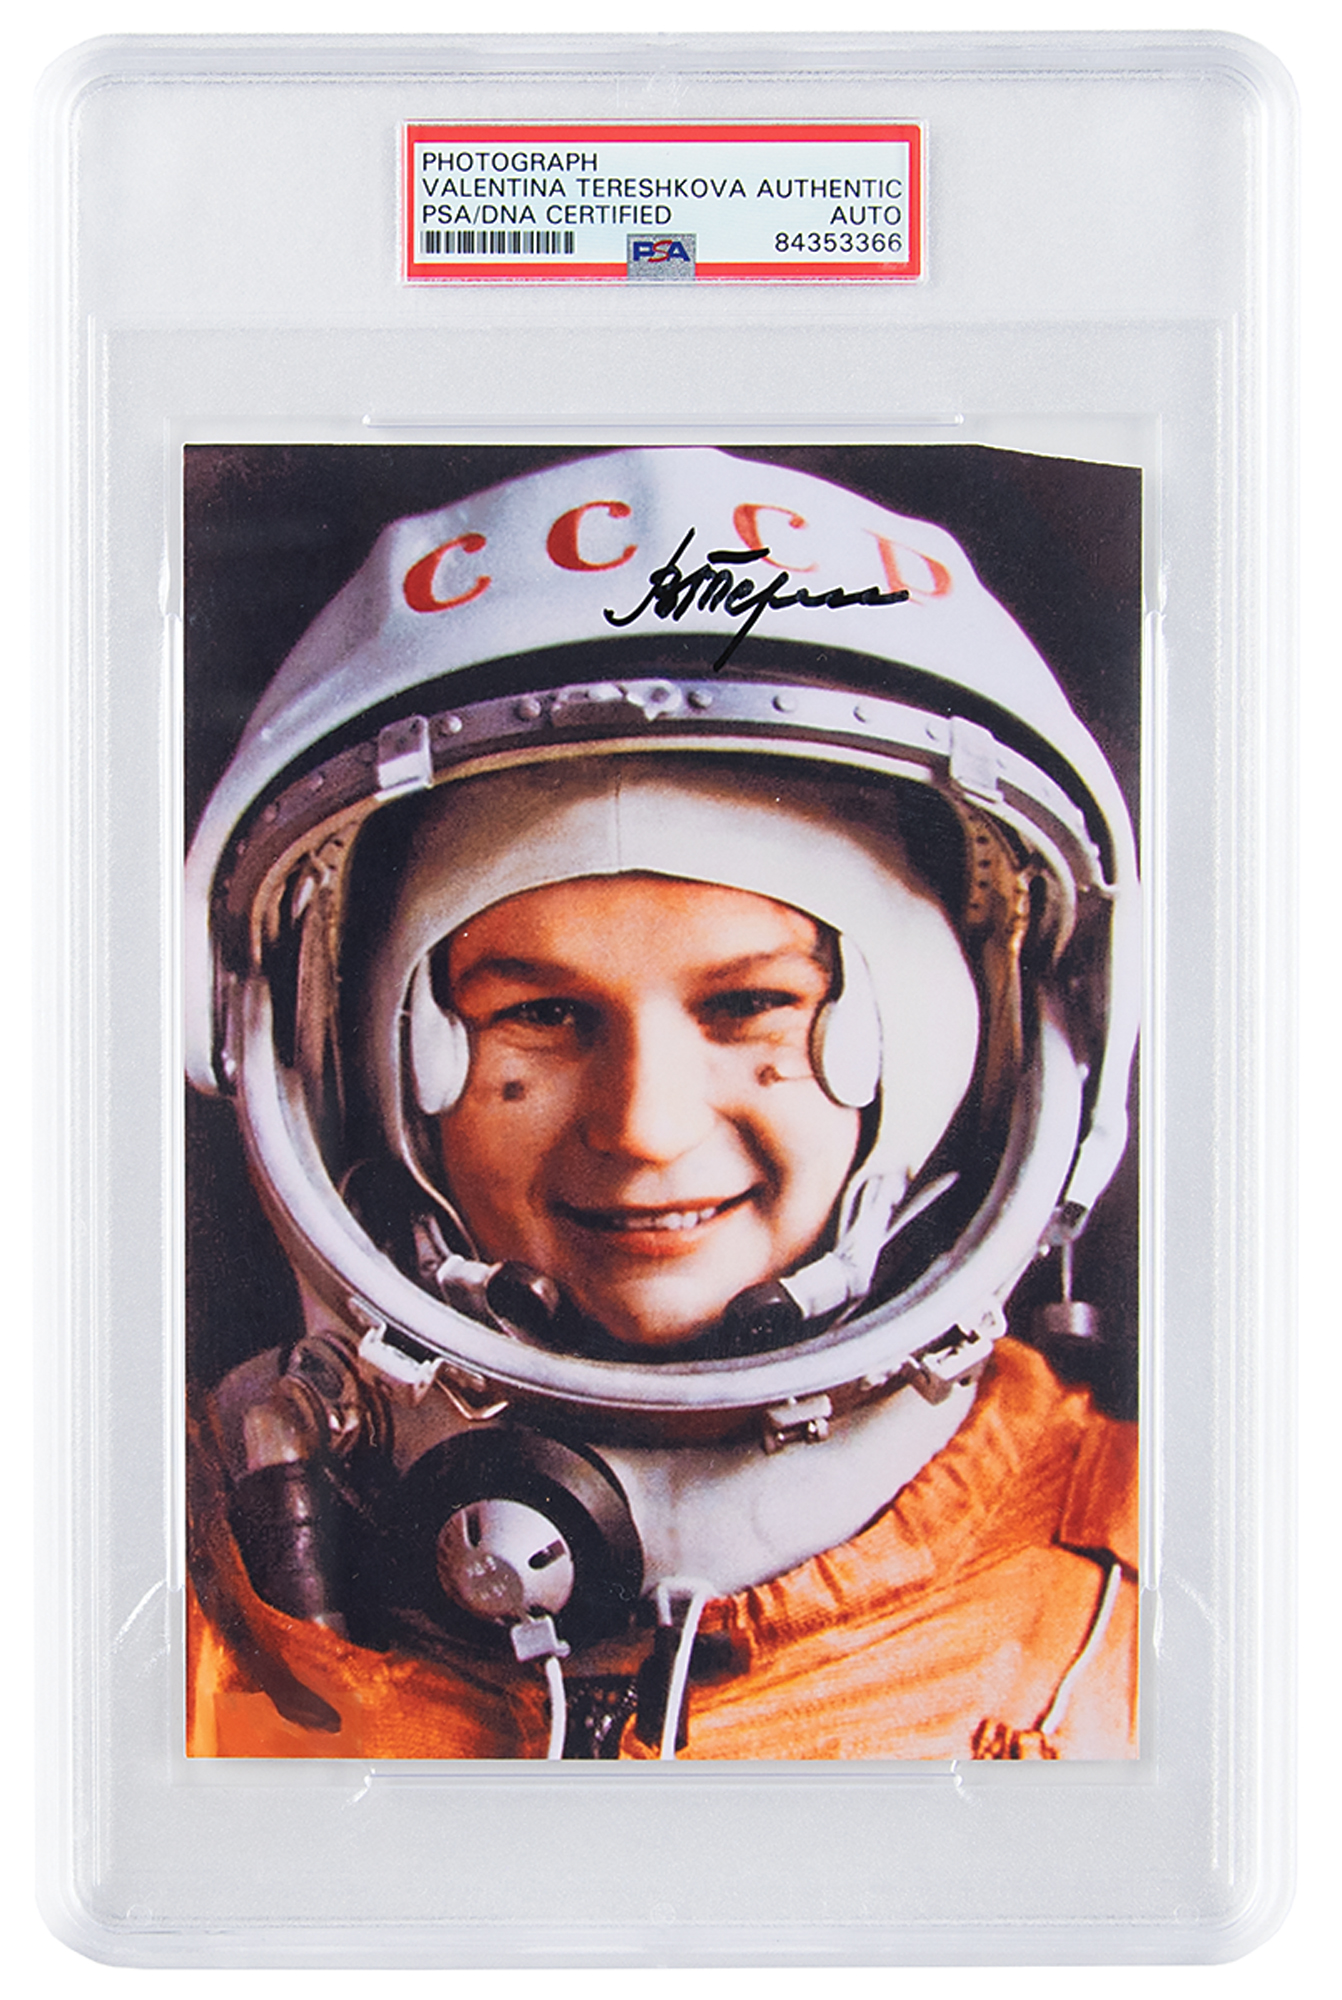 Lot #7175 Valentina Tereshkova Signed Photograph